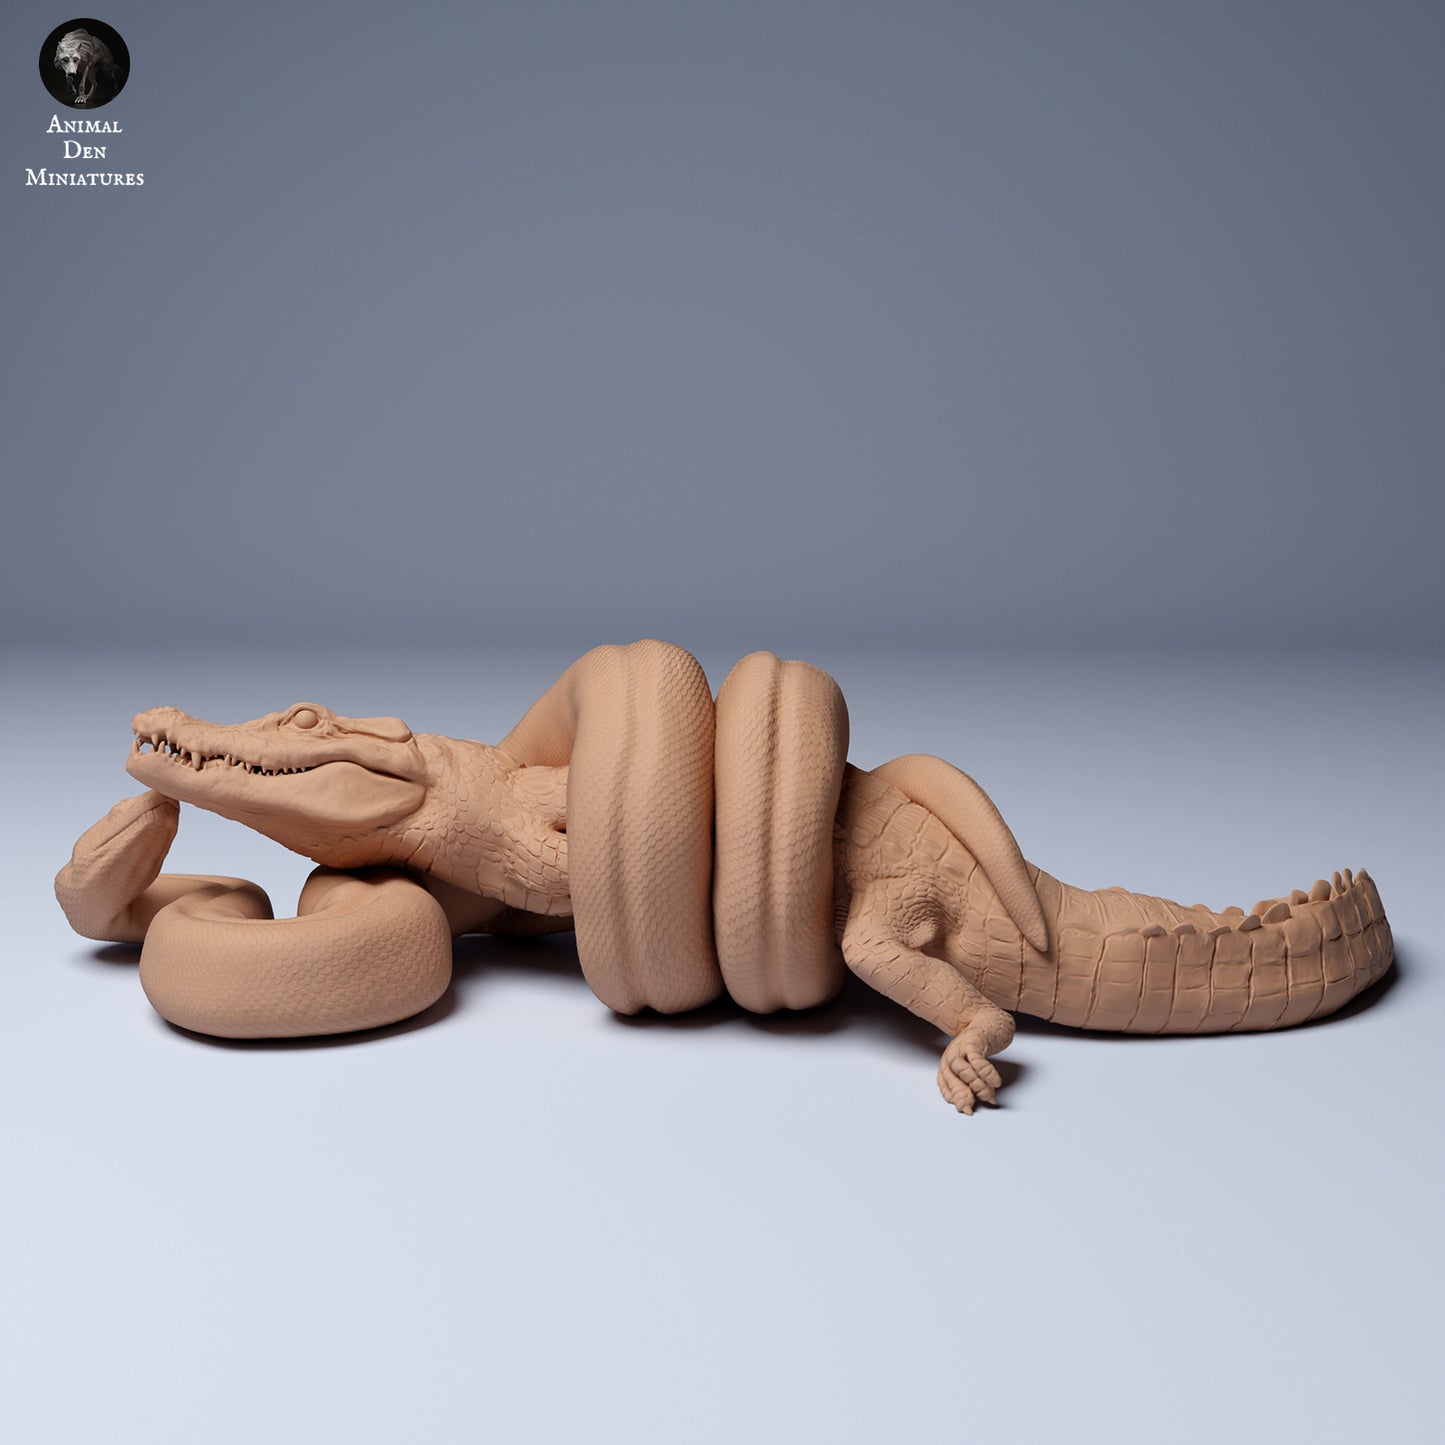 Produktfoto Tier Figur Diorama, Modellbau: 0: Anakonda kämpft mit Cayman: Tiere aus Südamerika